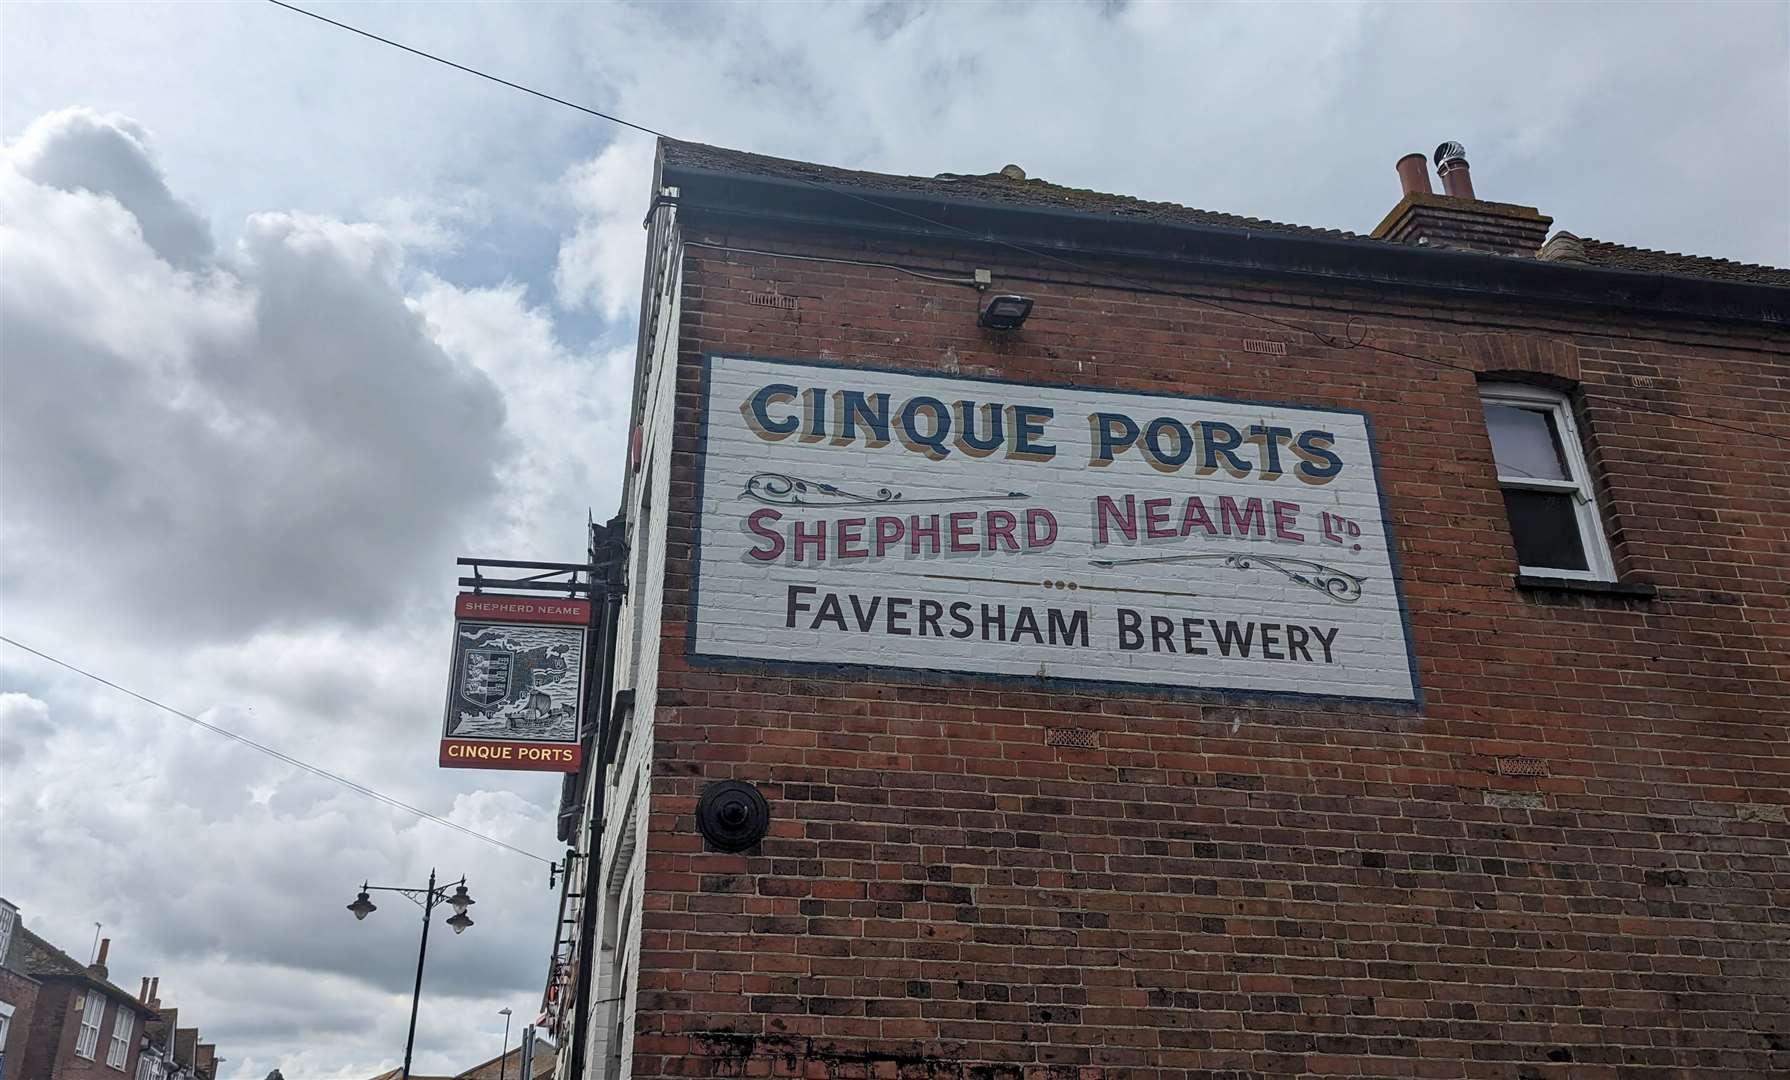 The Cinque Ports pub in Rye